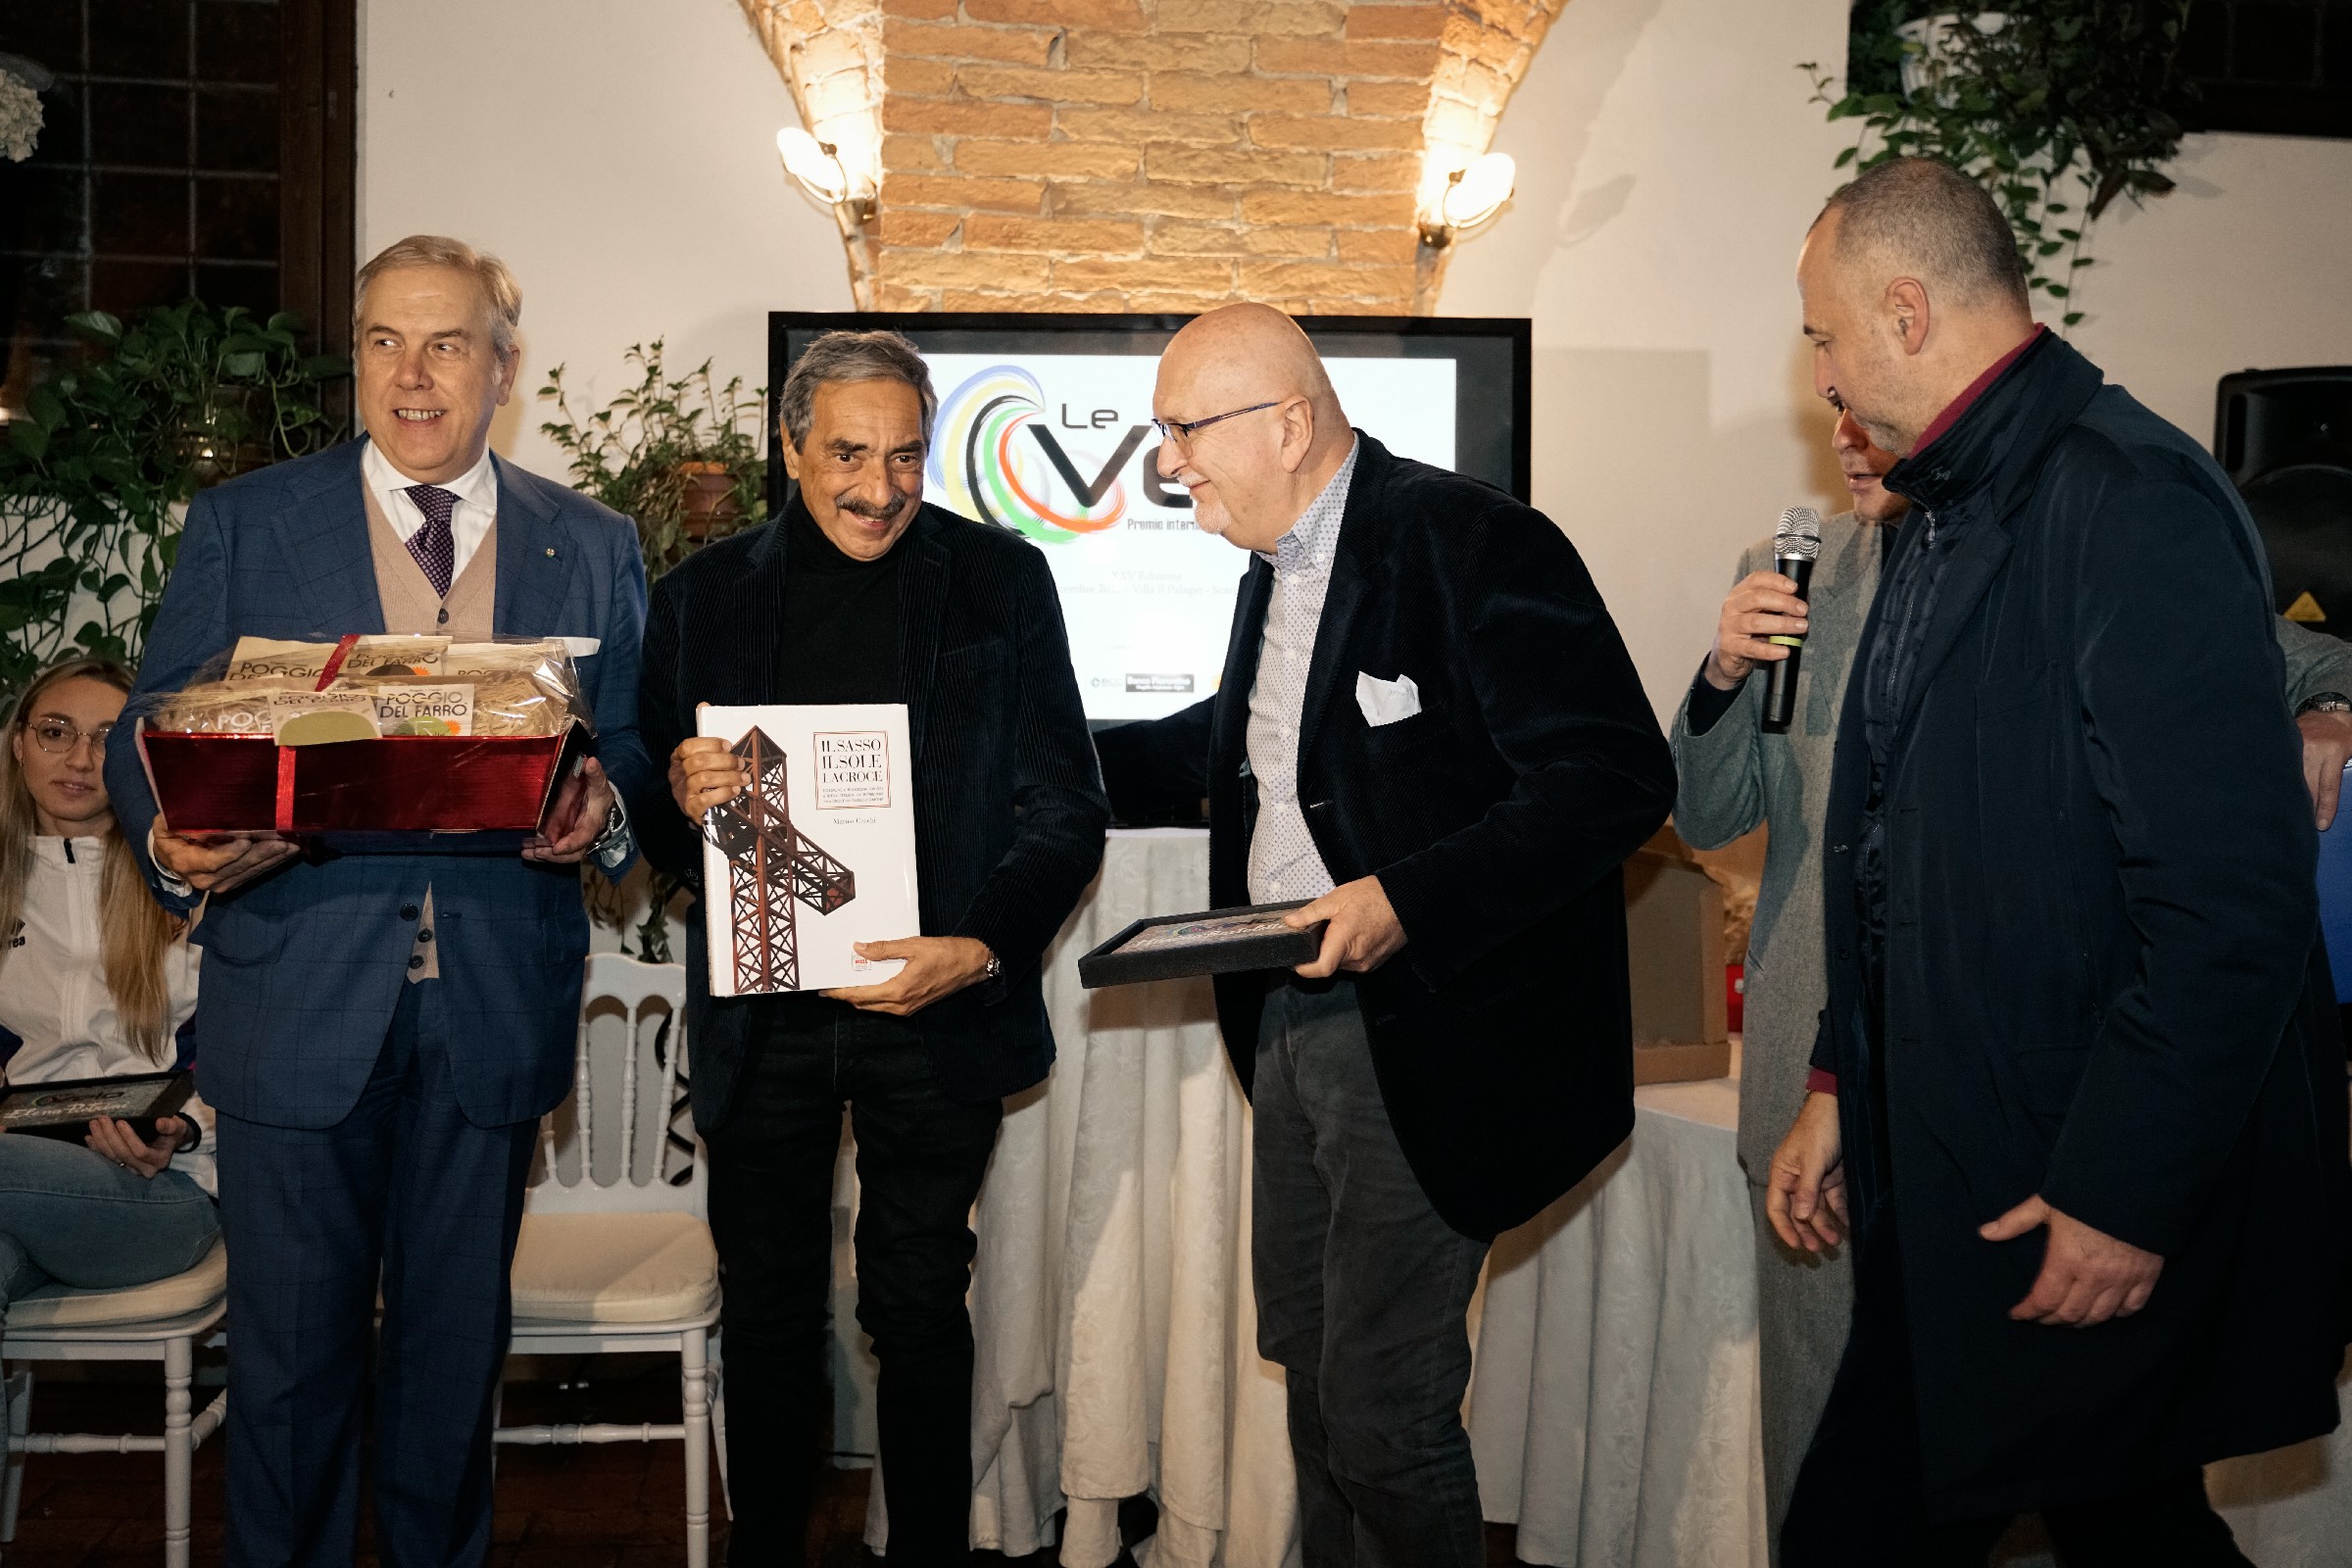 “Le Velo” festeggia al meglio la sua XXV edizione con Ferrieri Caputi, Pini, Pietrini, Buccoliero, Castrovilli e Bartoletti